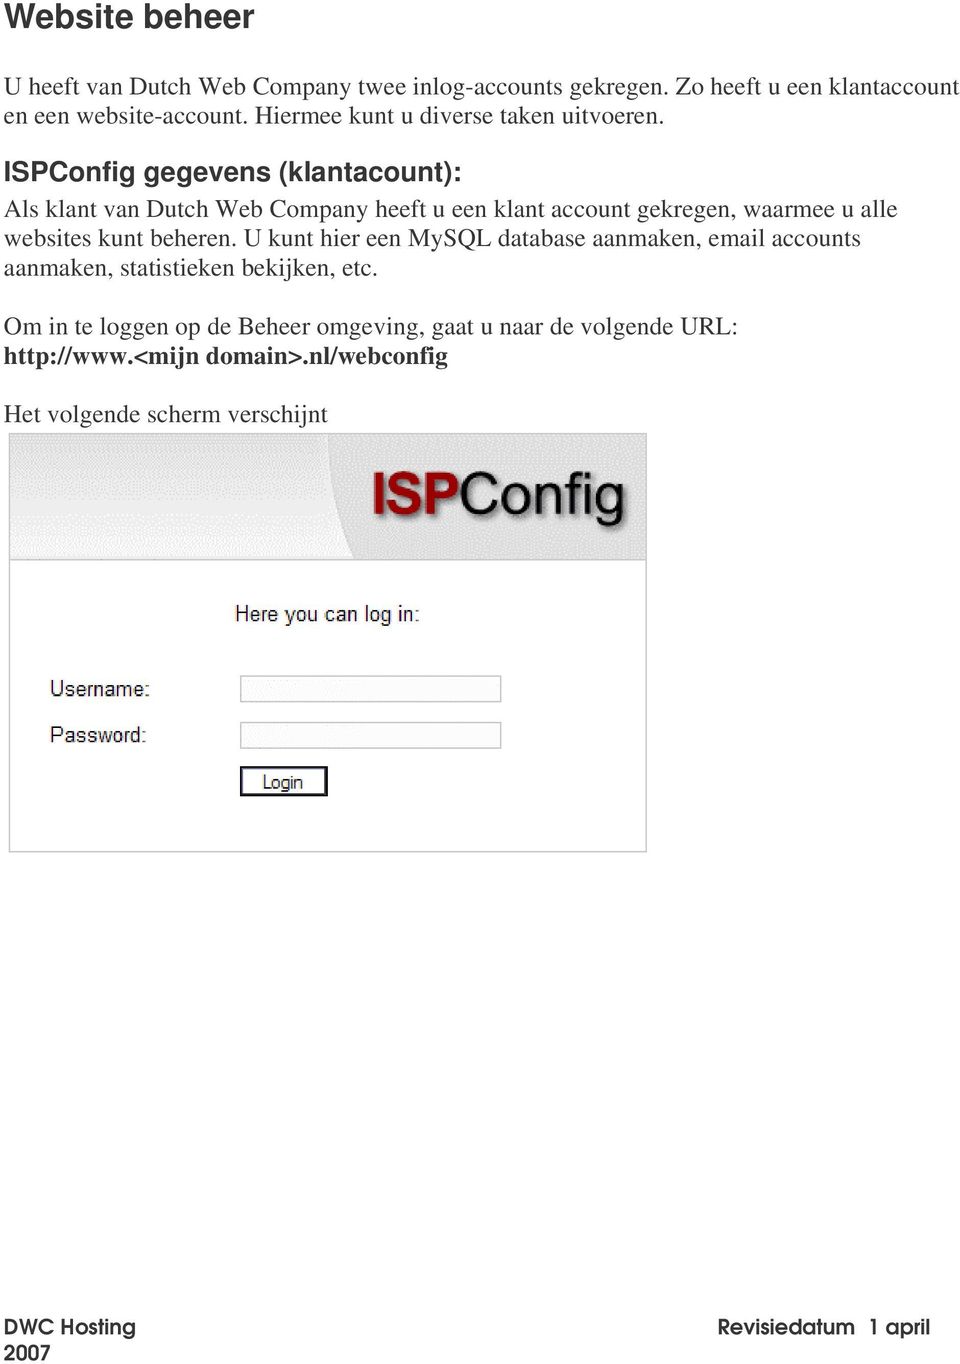 ISPConfig gegevens (klantacount): Als klant van Dutch Web Company heeft u een klant account gekregen, waarmee u alle websites kunt